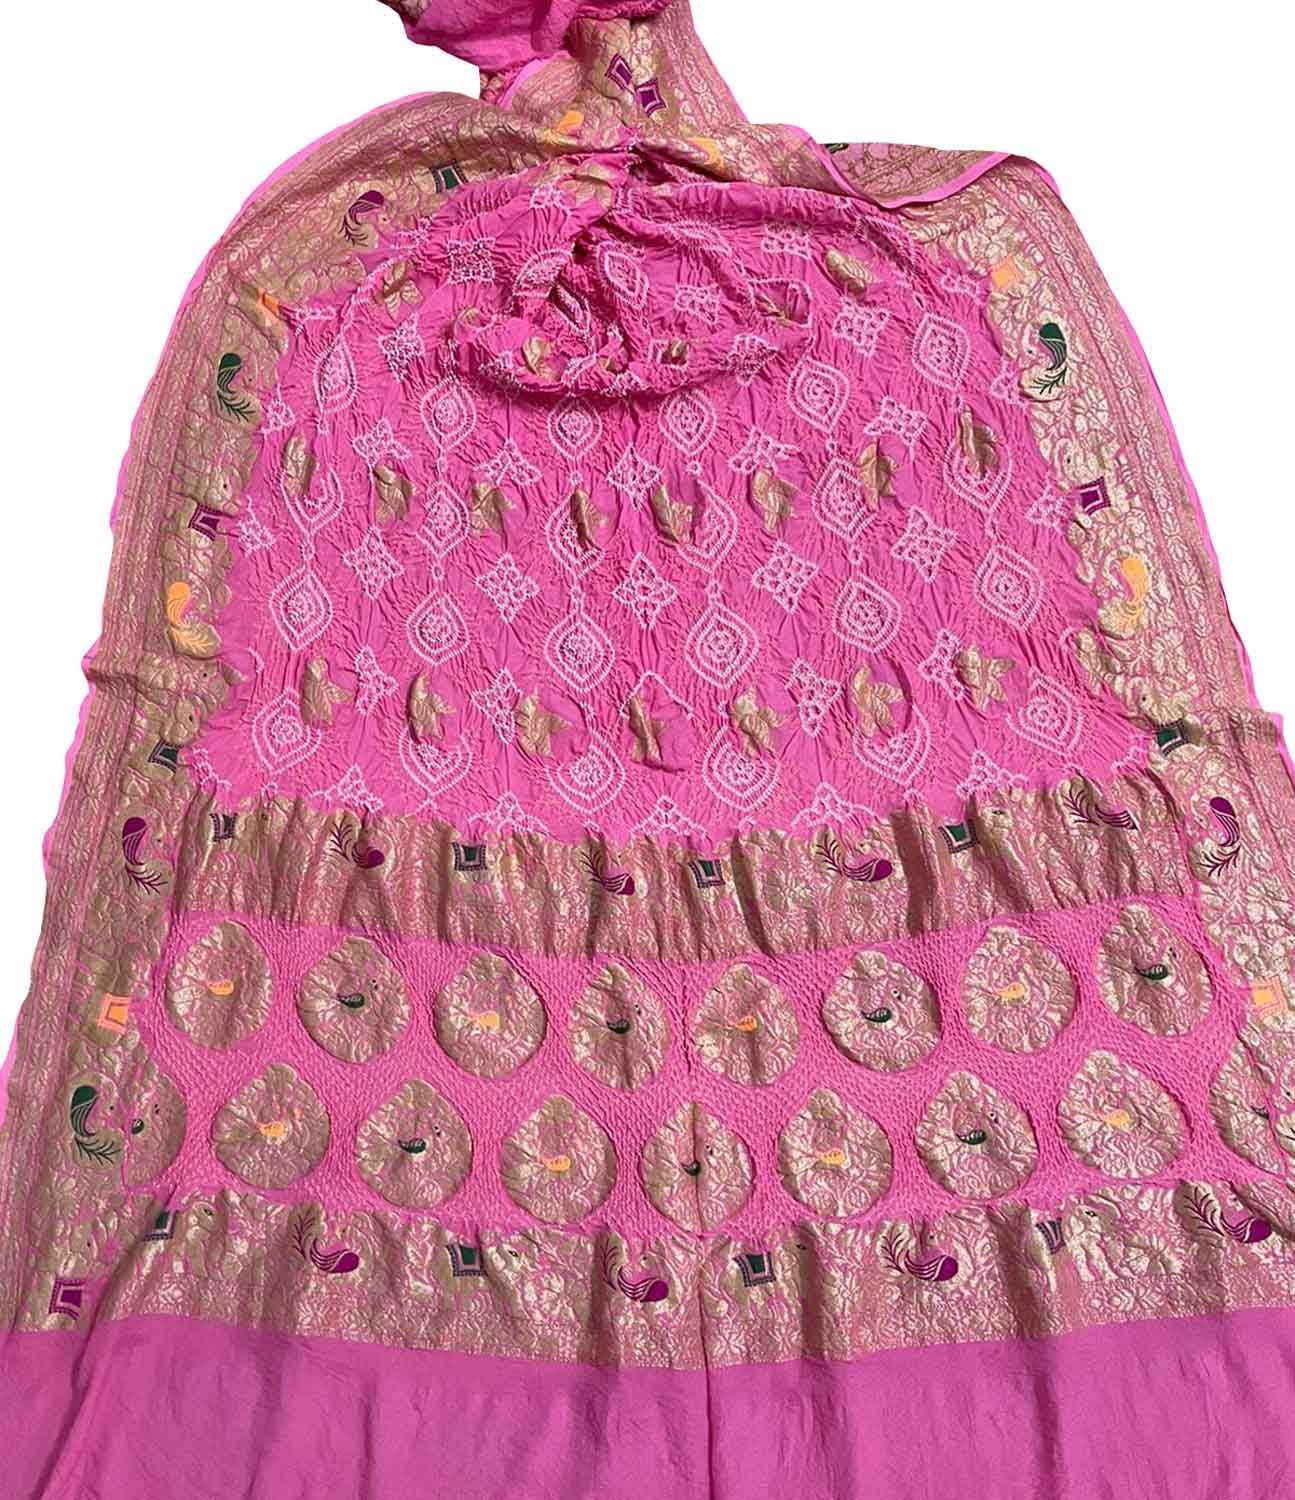 Elegant Pink Banarasi Bandhani Georgette Dupatta with Meenakari Work - Luxurion World